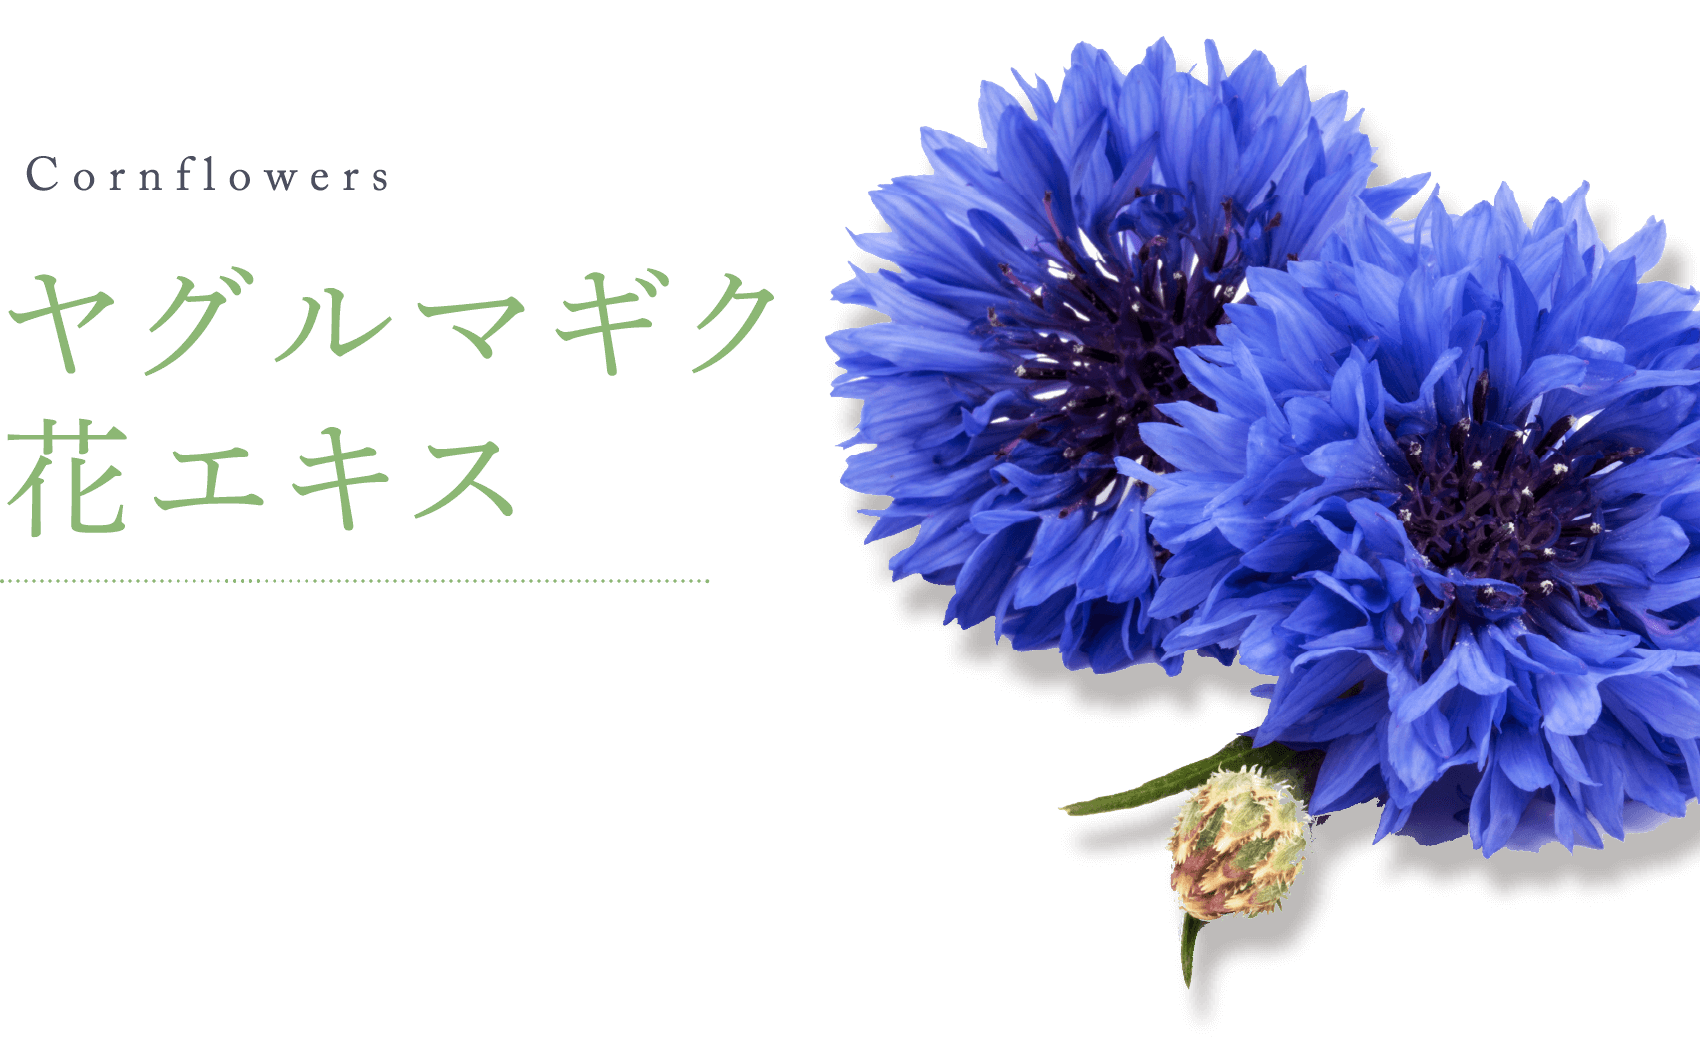 Cornflowers ヤグルマギク 花エキス